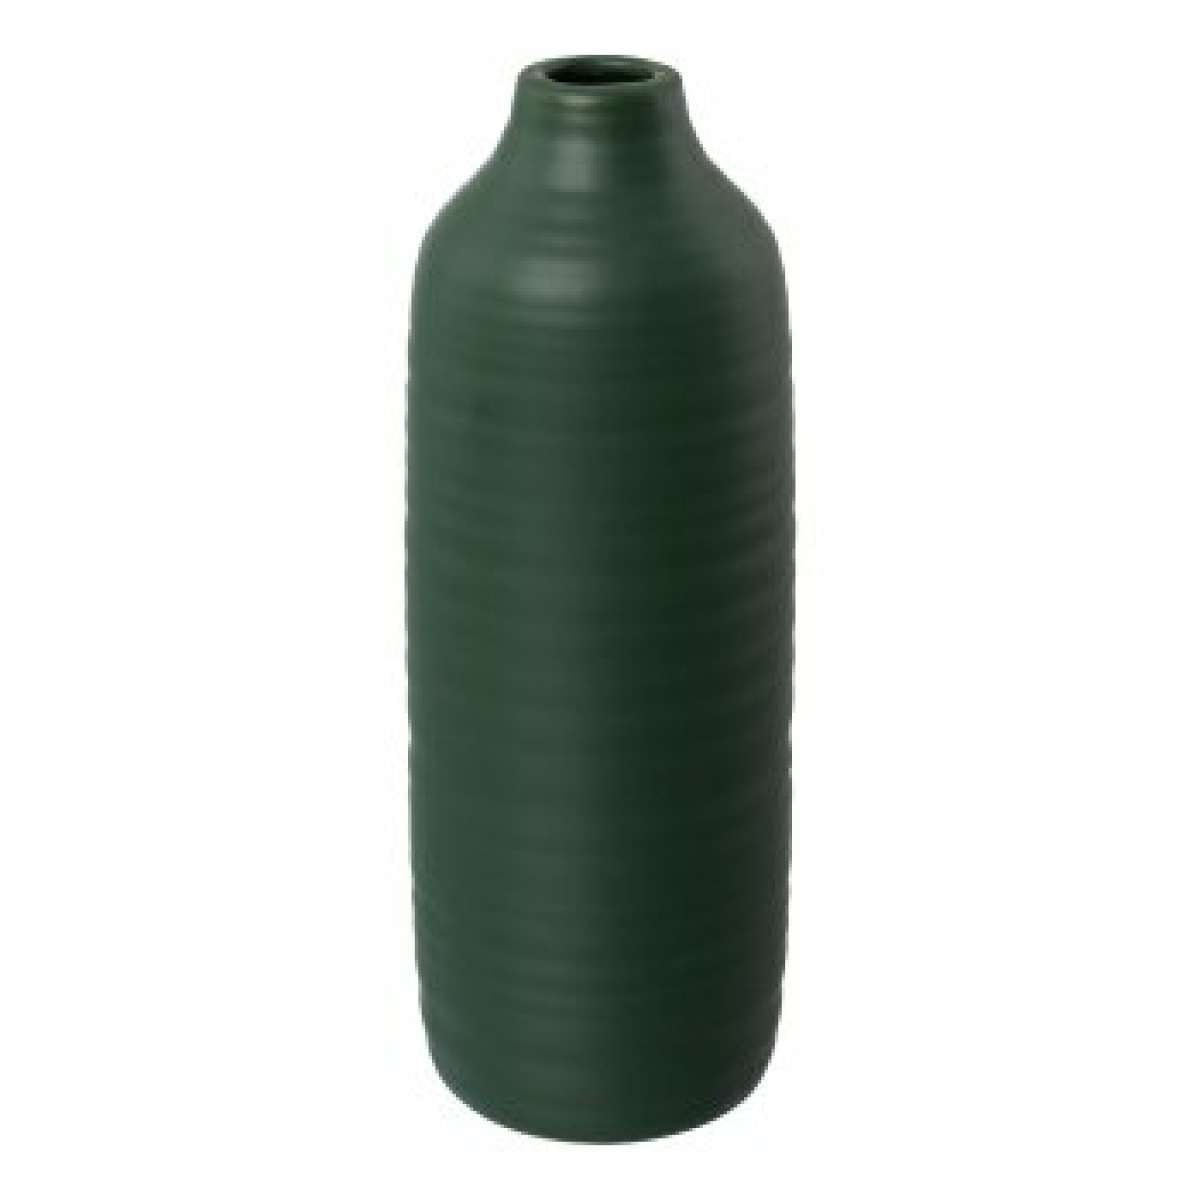 Immagine del prodotto Vaso in Ceramica Presence 10x10x30 cm (8 Colori) Grande | Gasper since 1965